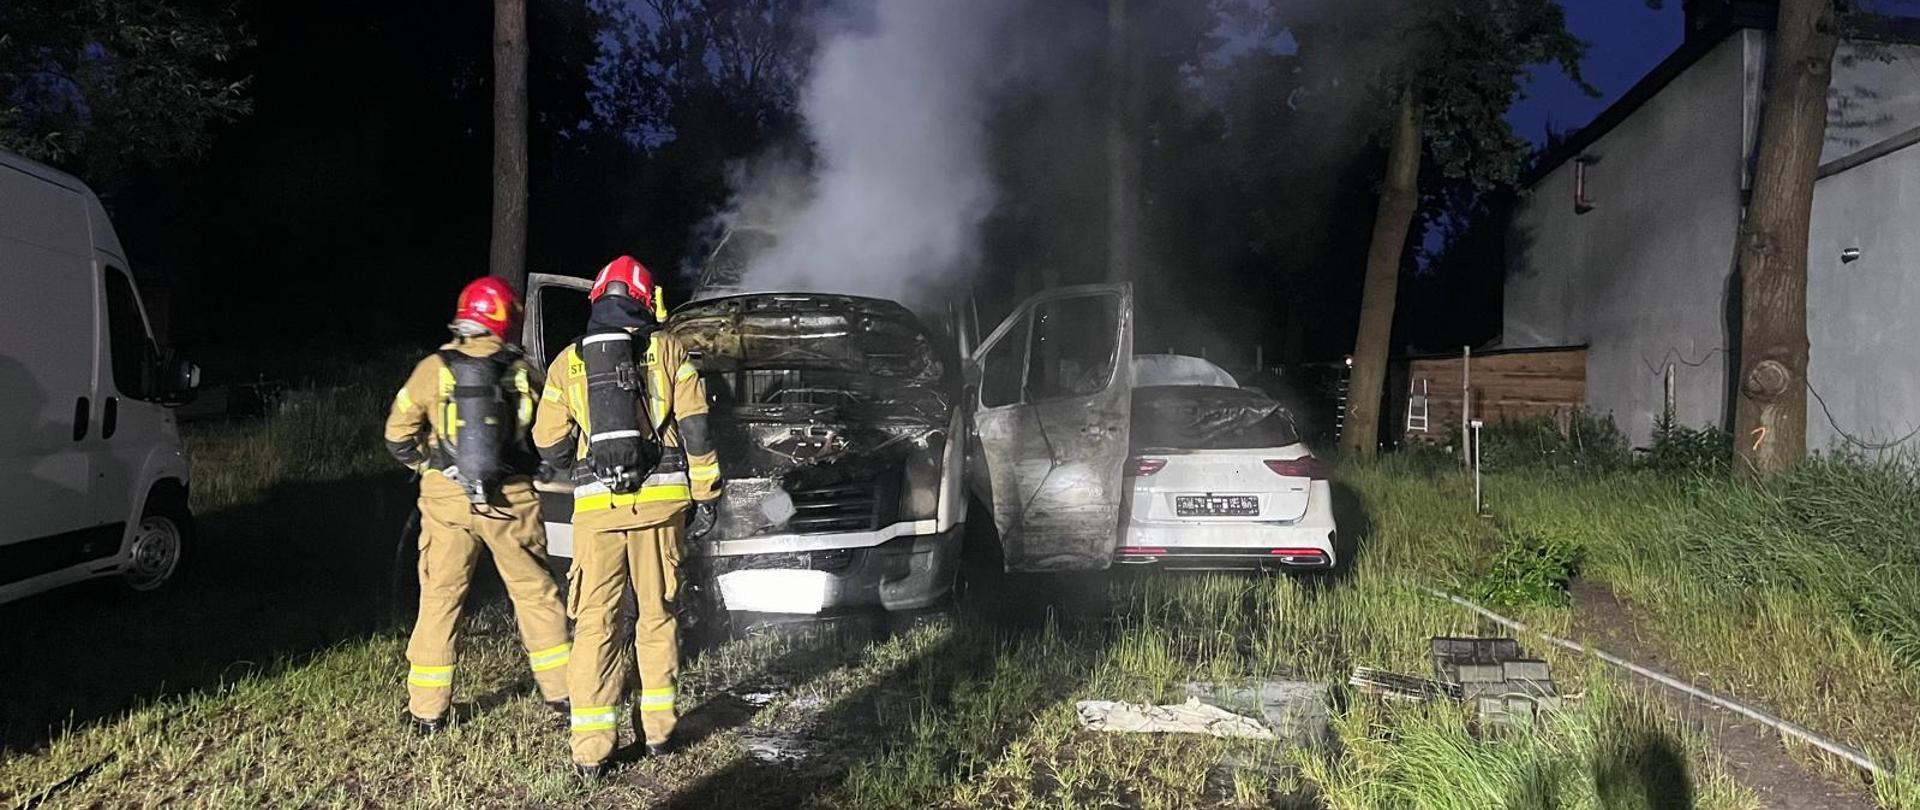 Na zdjęciu widoczne są dwa pojazdy osobowe które uległy spaleniu. Z ich wraków wydobywa się gęsty dym. Przed samochodami stoi dwóch ratowników kontrolujących temperaturę.